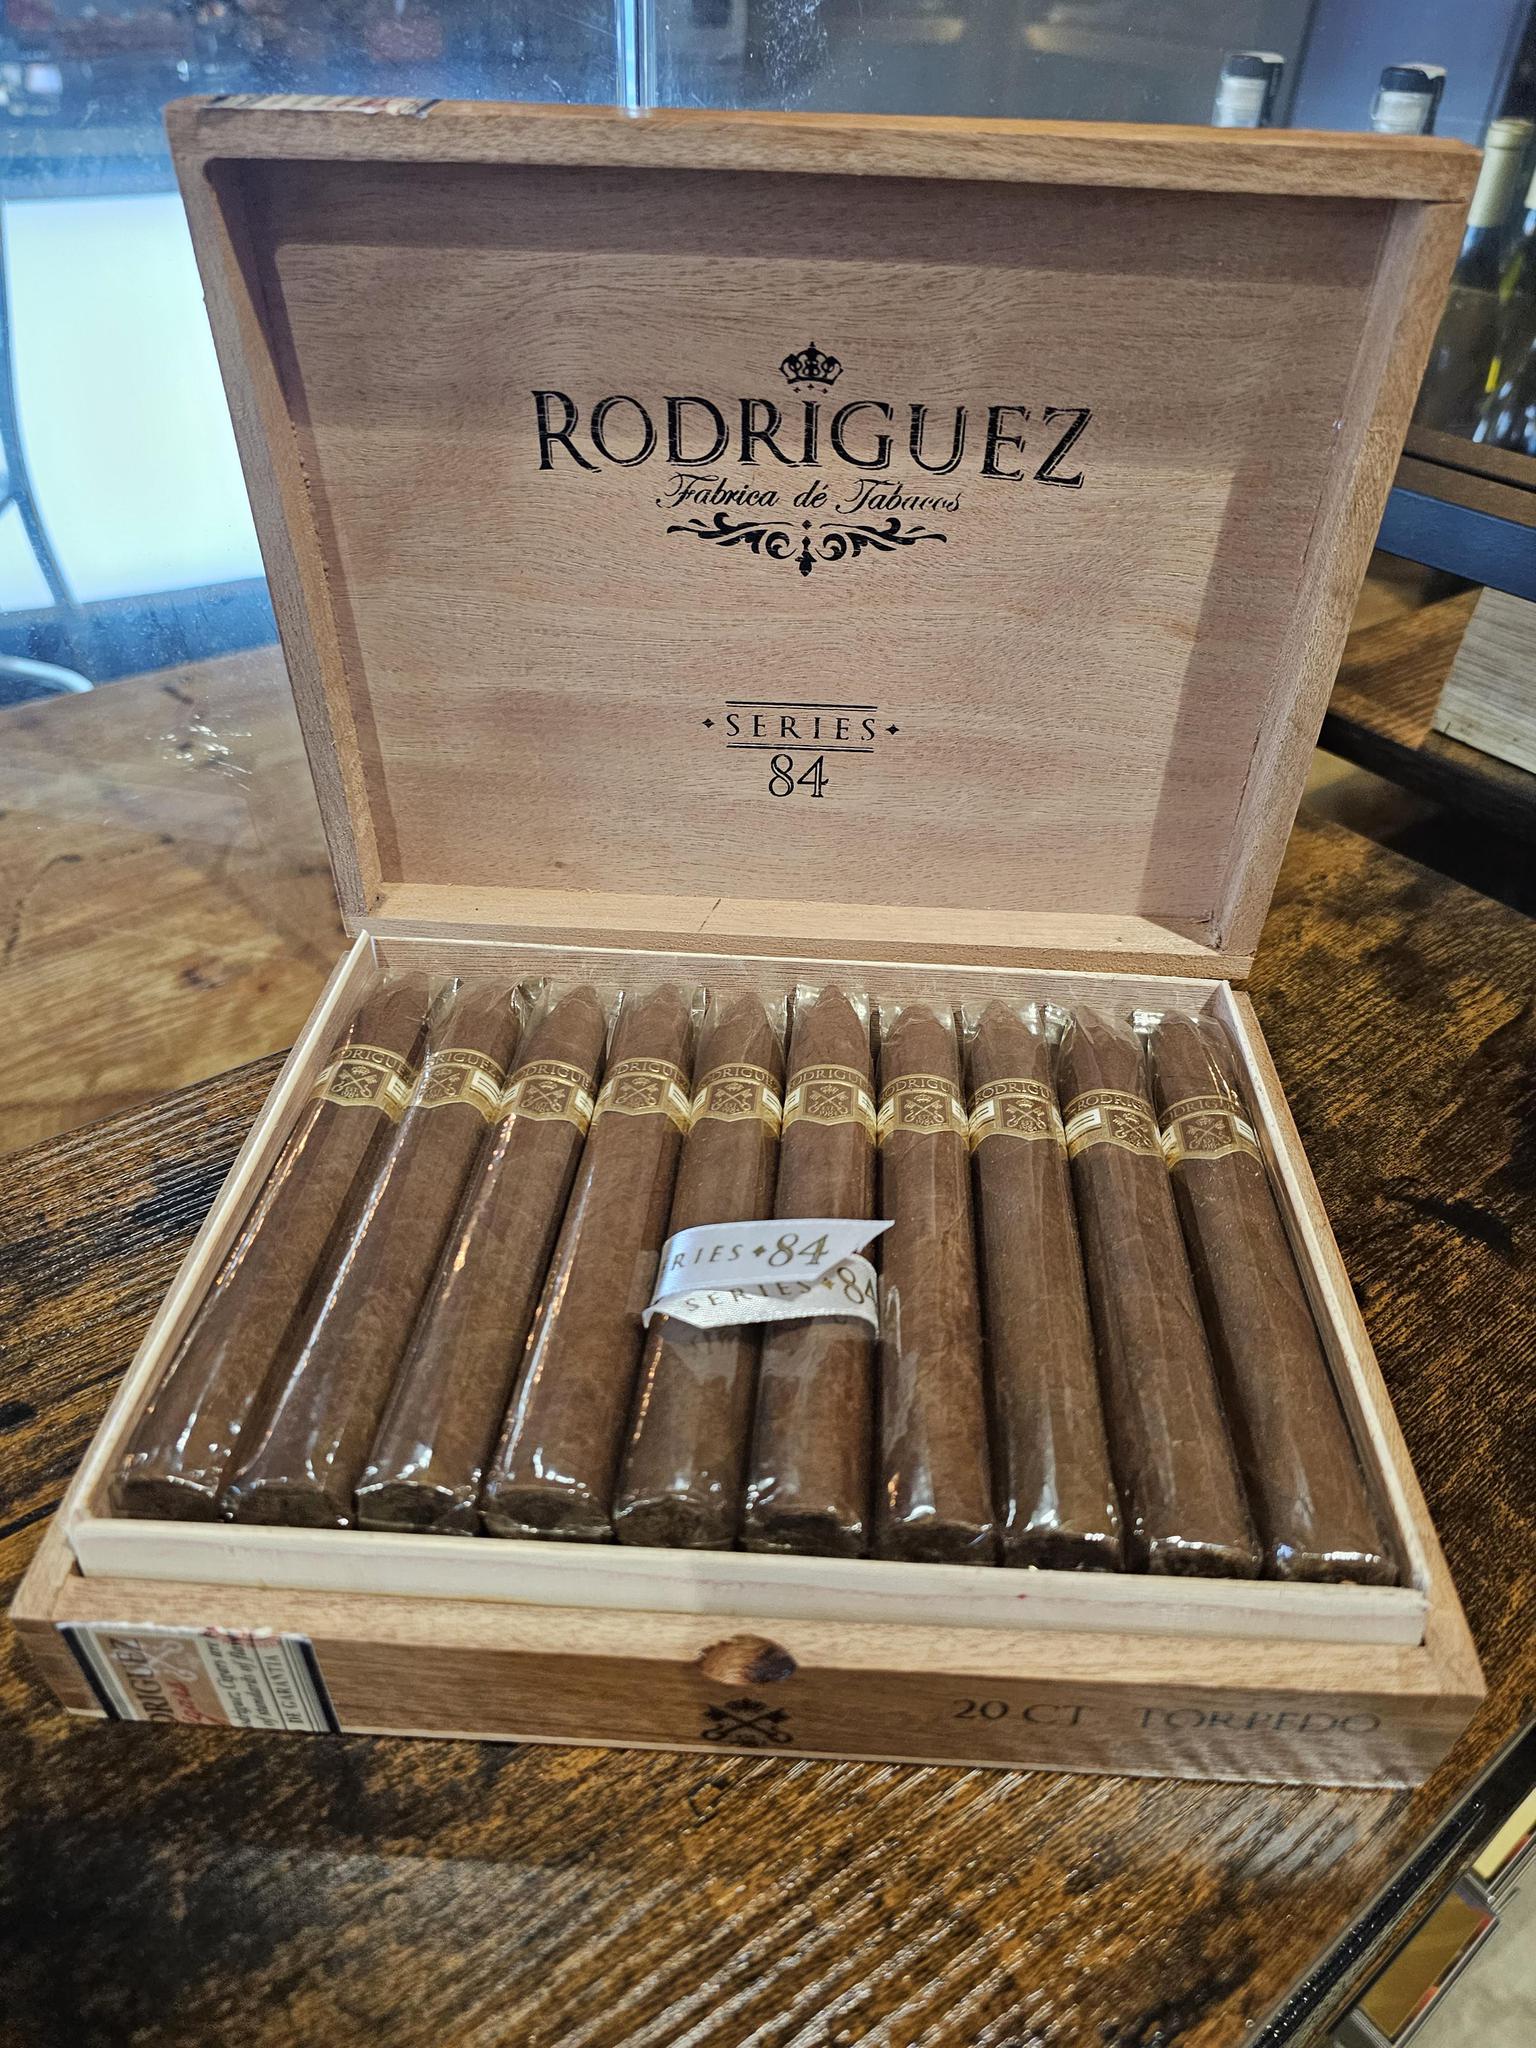 -Rodriguez Series 84 Torpedo (Box)